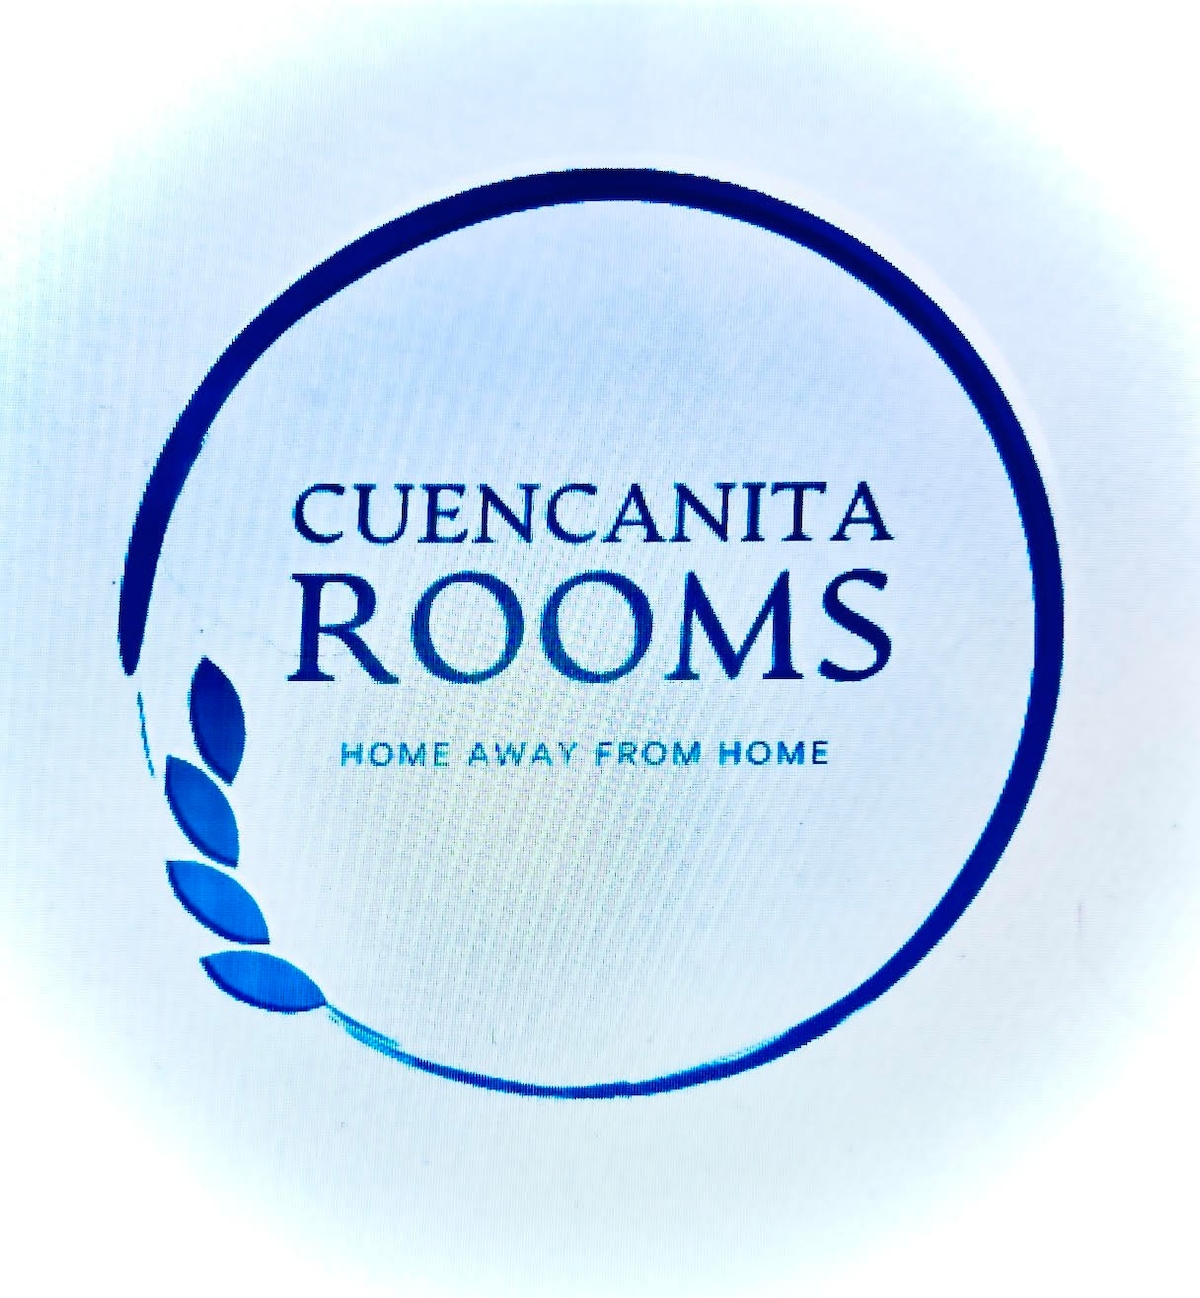 Cuencanita Rooms